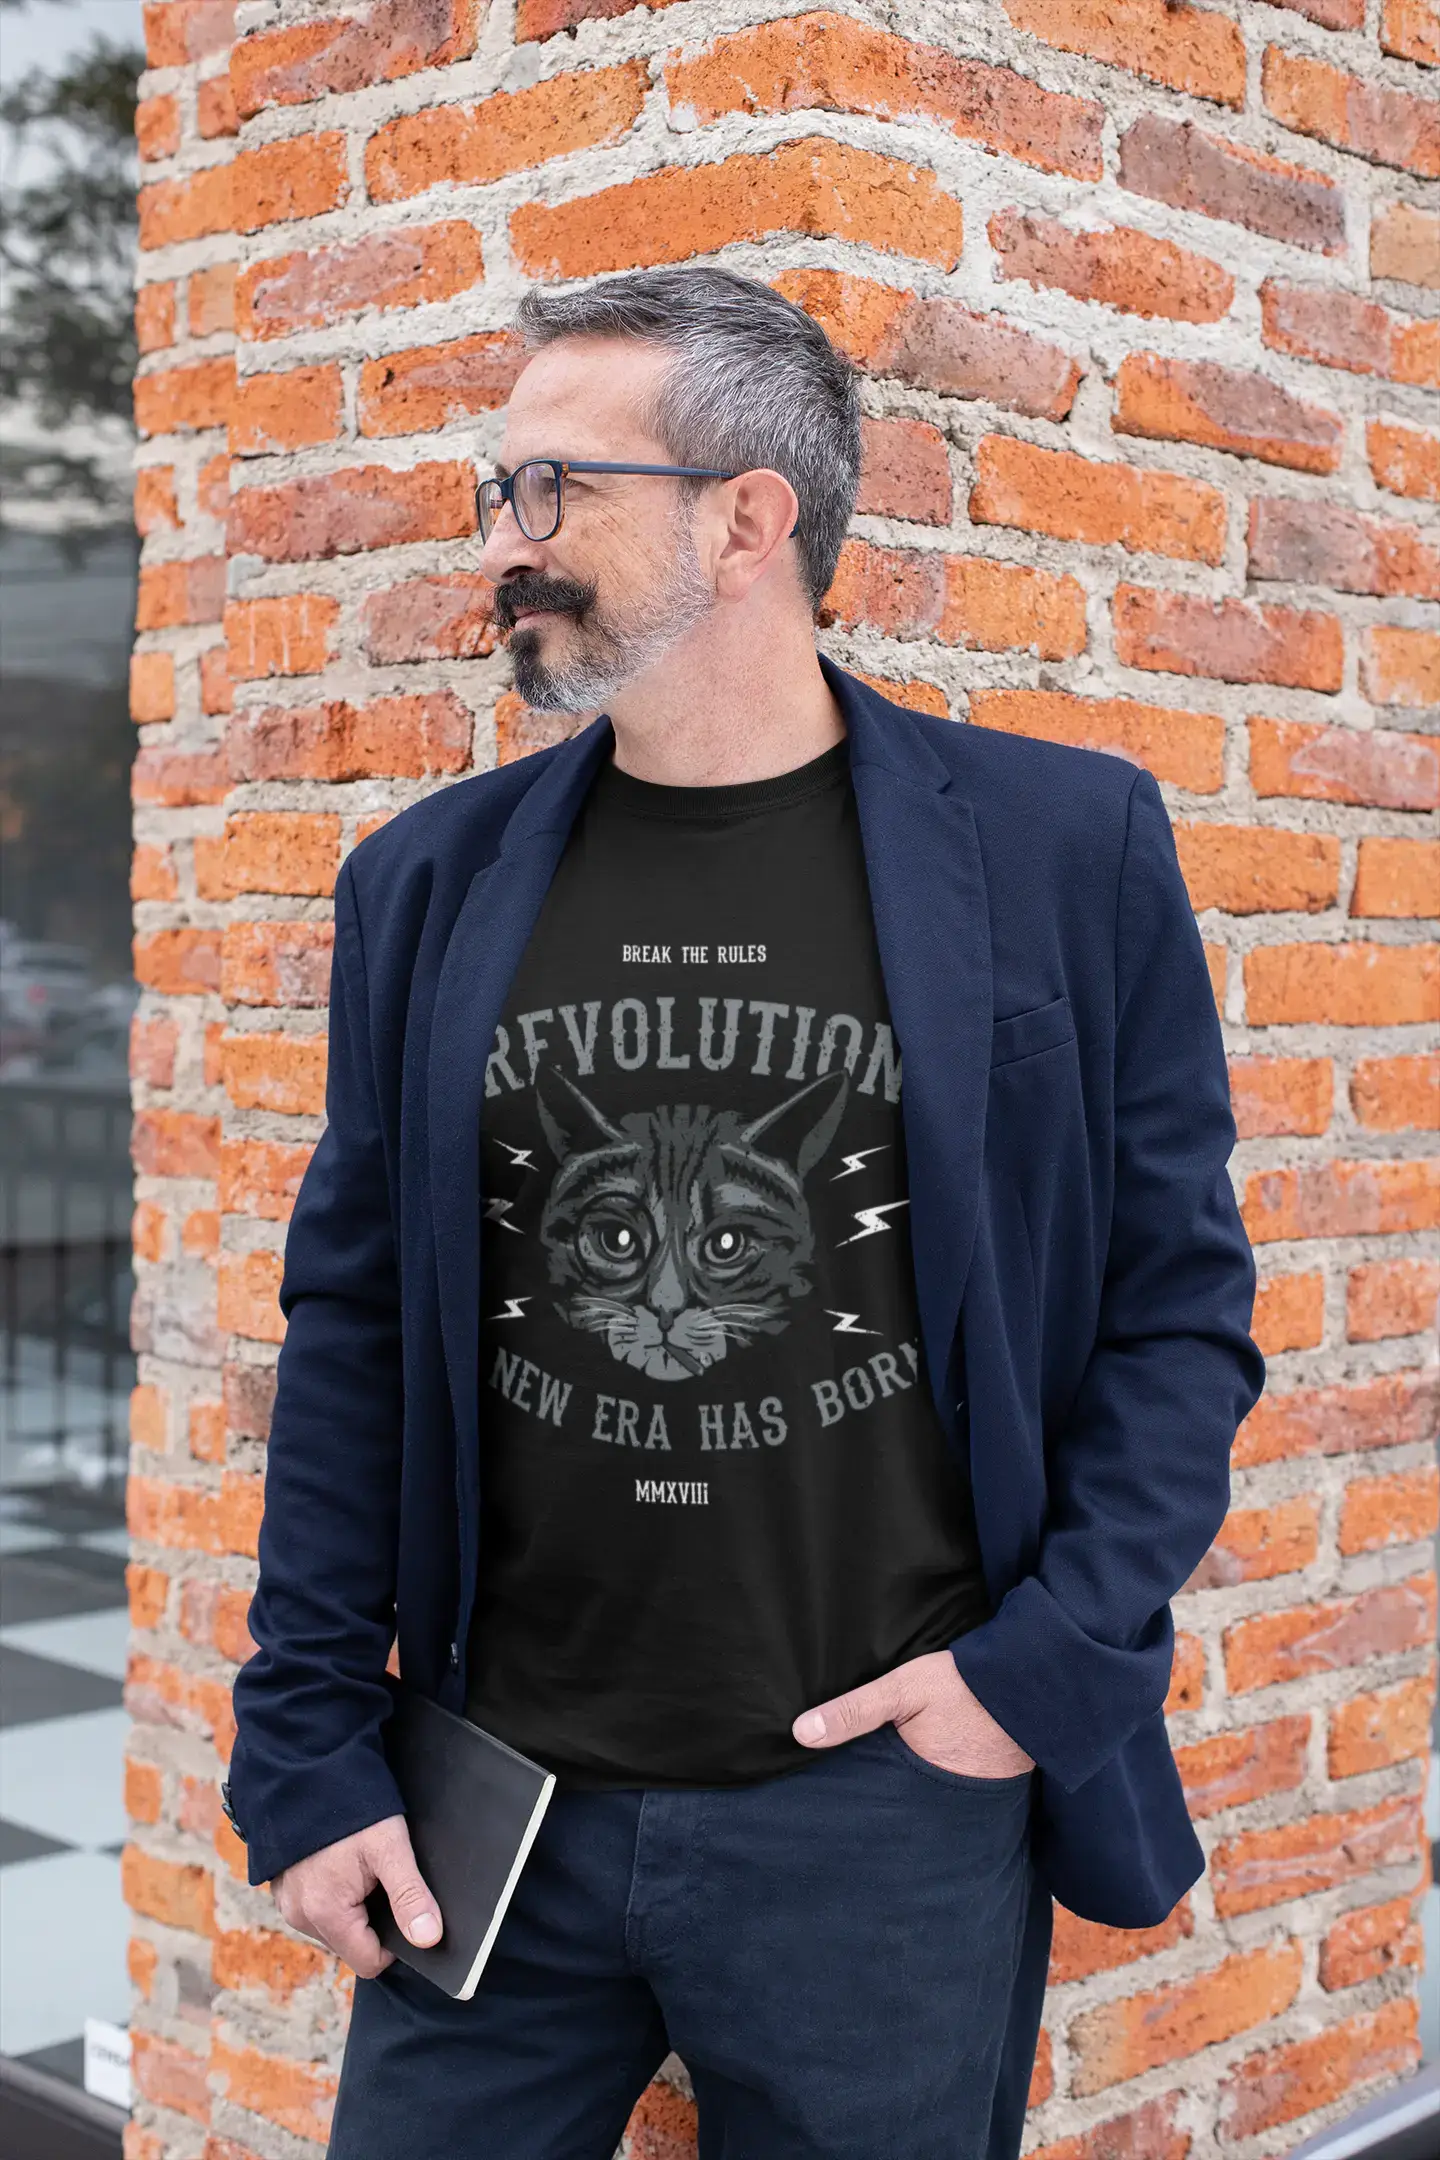 ULTRABASIC Men's T-Shirt Break the Rules - Cat Revolution Funny Shirt for Men